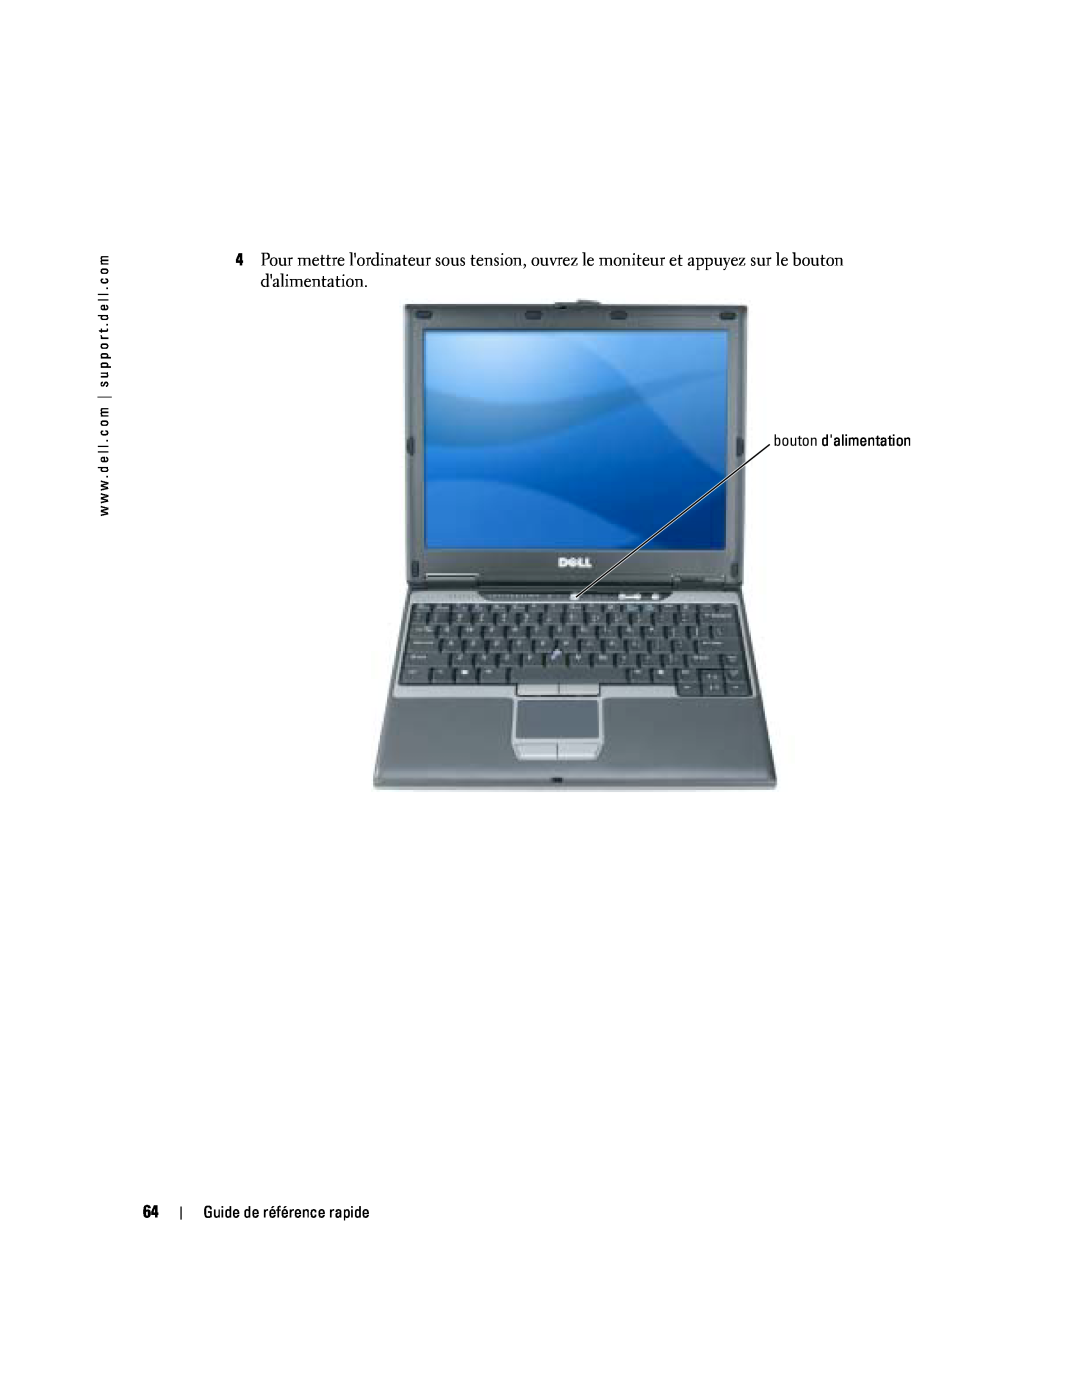 Dell PP06S manual bouton dalimentation, Guide de référence rapide 